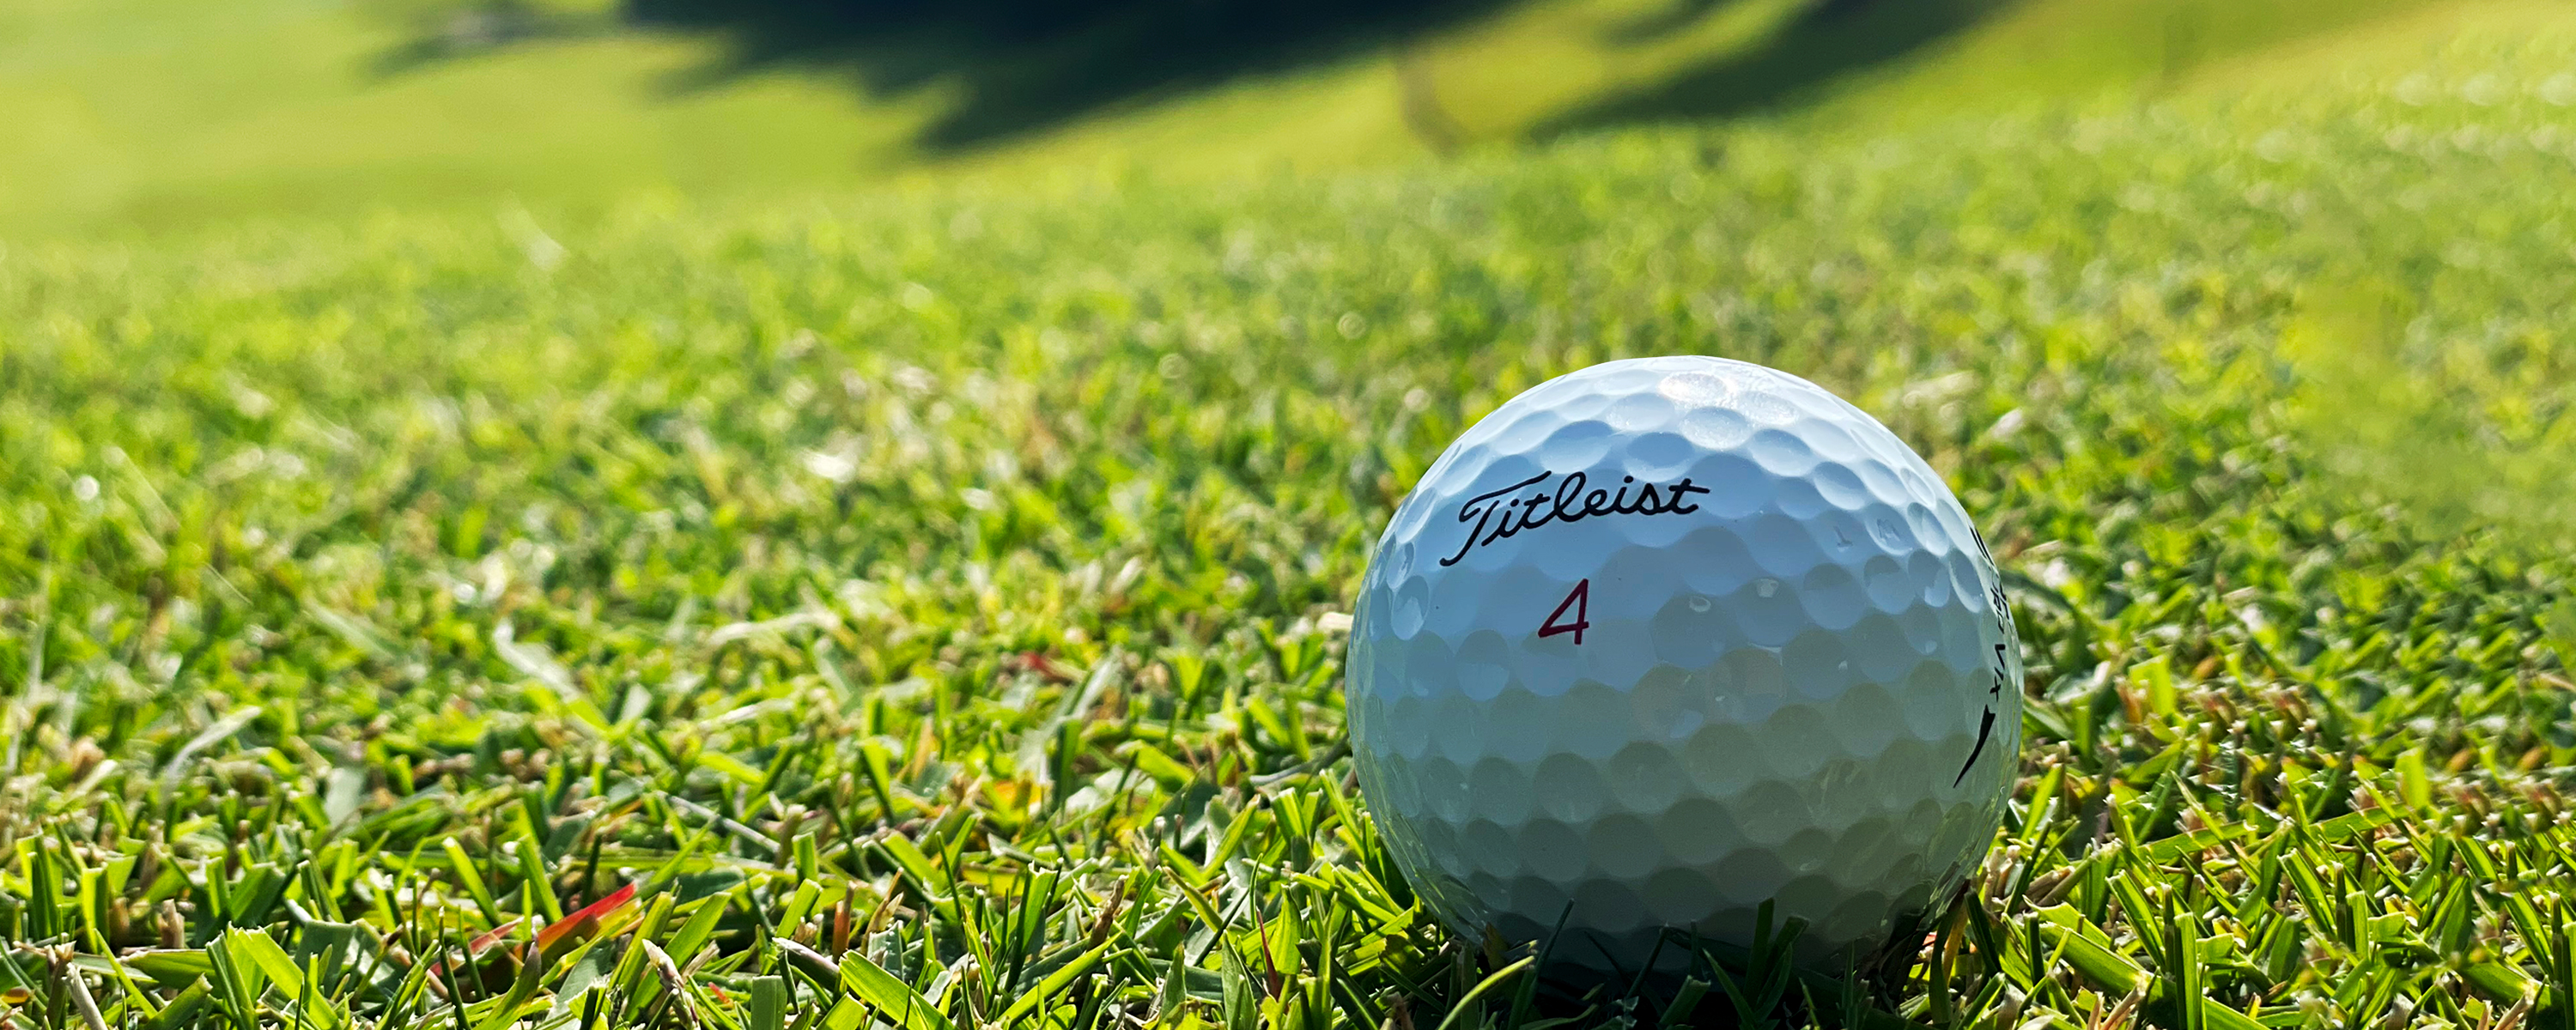  オリムピックナショナルゴルフクラブ サカワコース 芝生に置かれたゴルフボールの写真